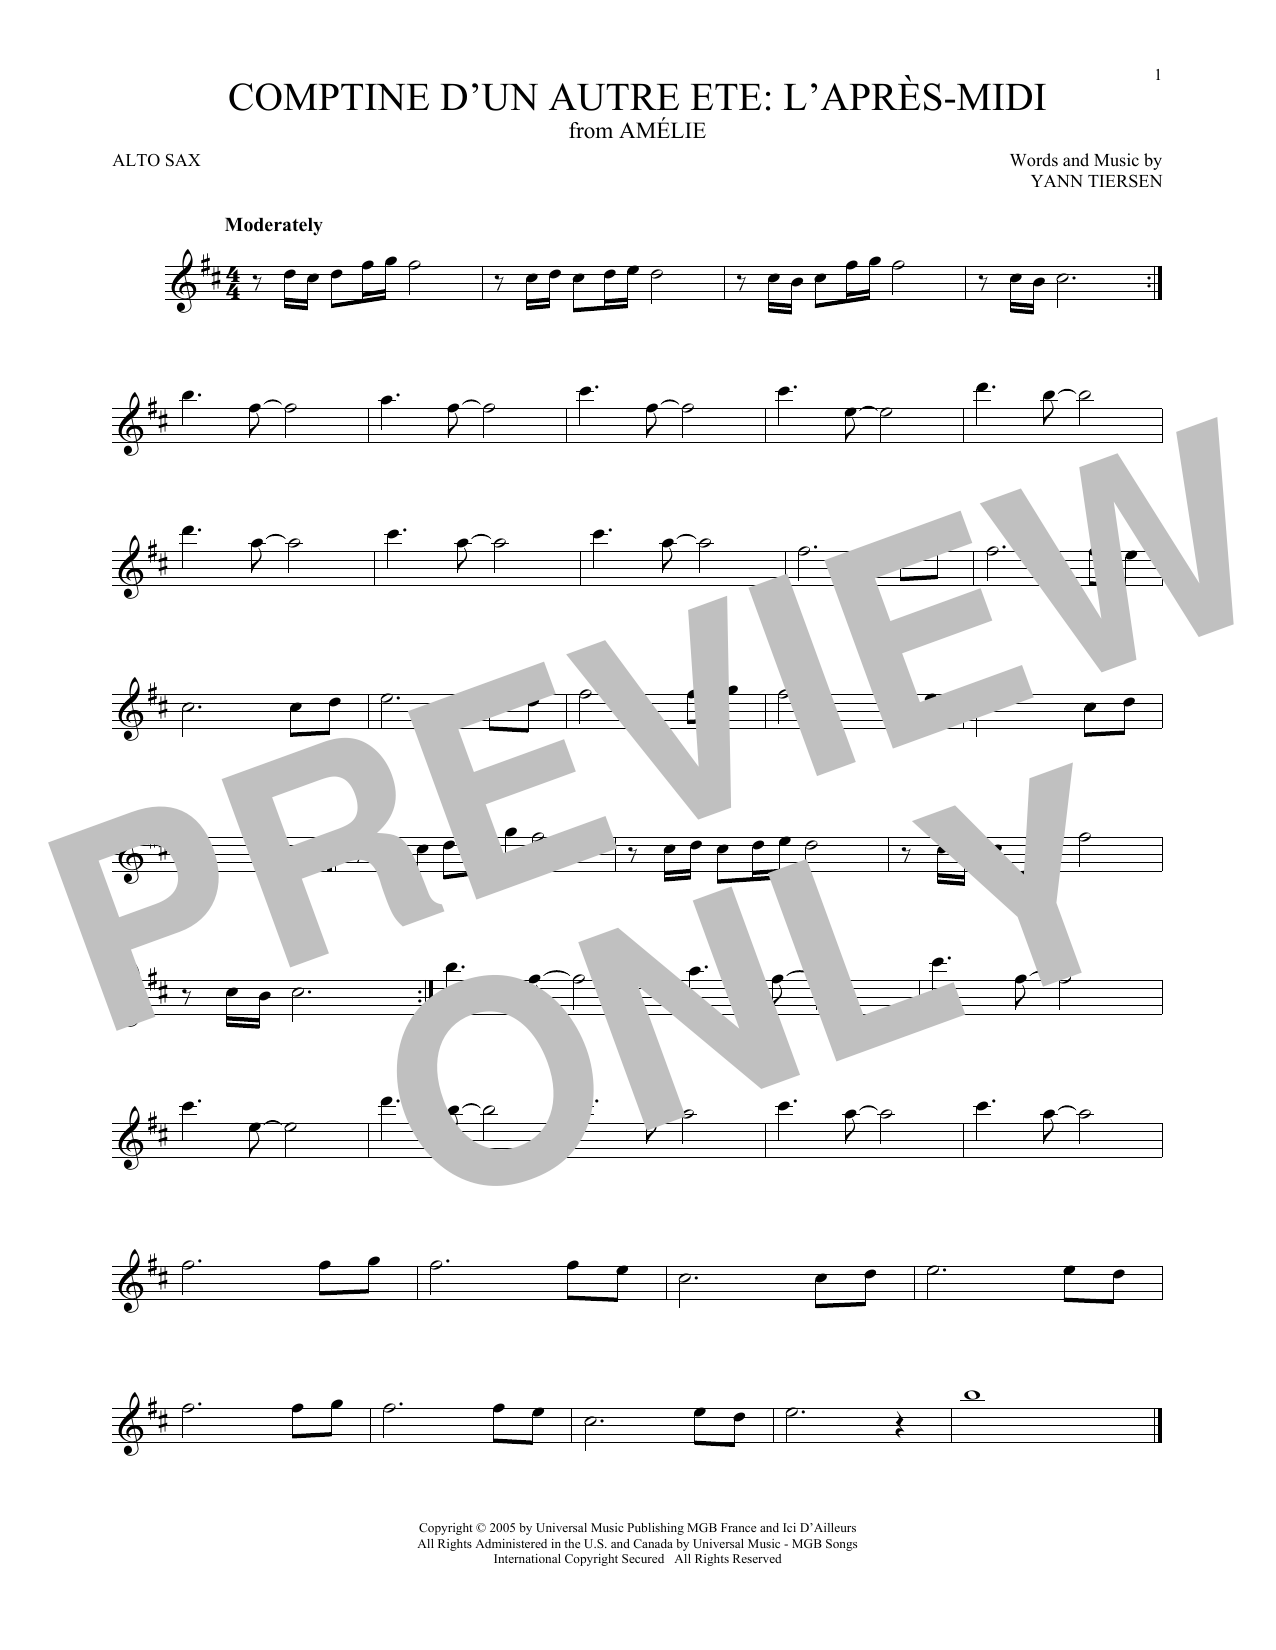 Download Yann Tiersen Comptine d'un autre été: L'après-midi (from Amelie) Sheet Music and learn how to play Cello Solo PDF digital score in minutes